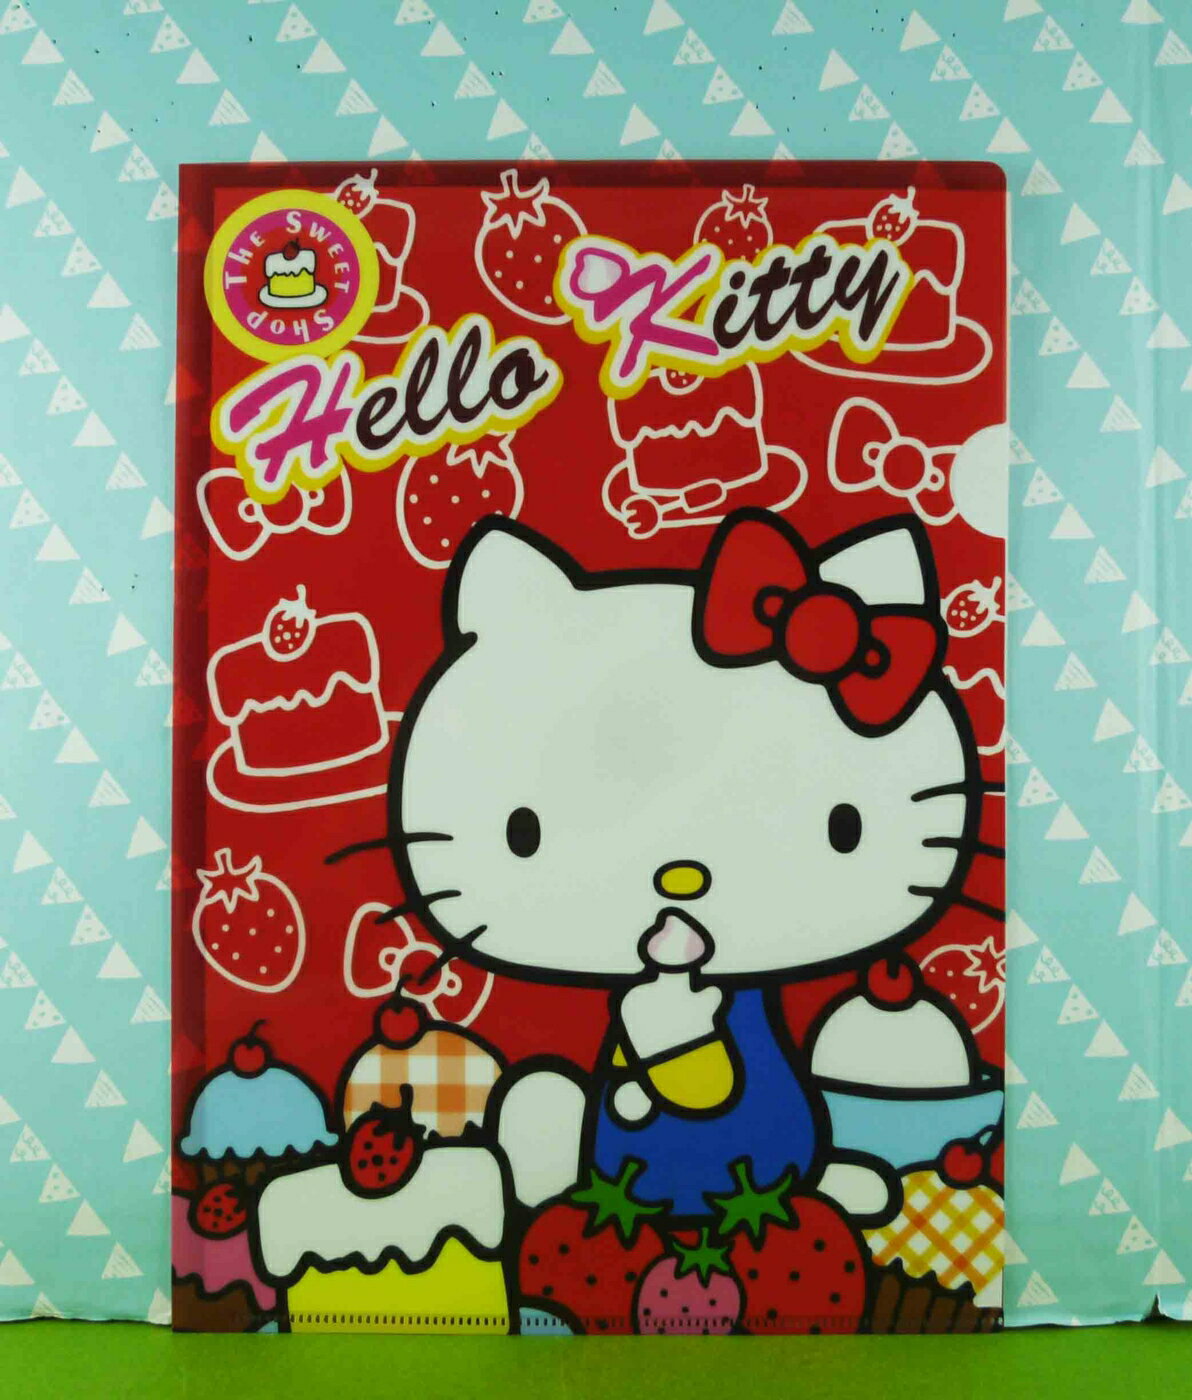 【震撼精品百貨】Hello Kitty 凱蒂貓 文件夾 蛋糕草莓【共1款】 震撼日式精品百貨